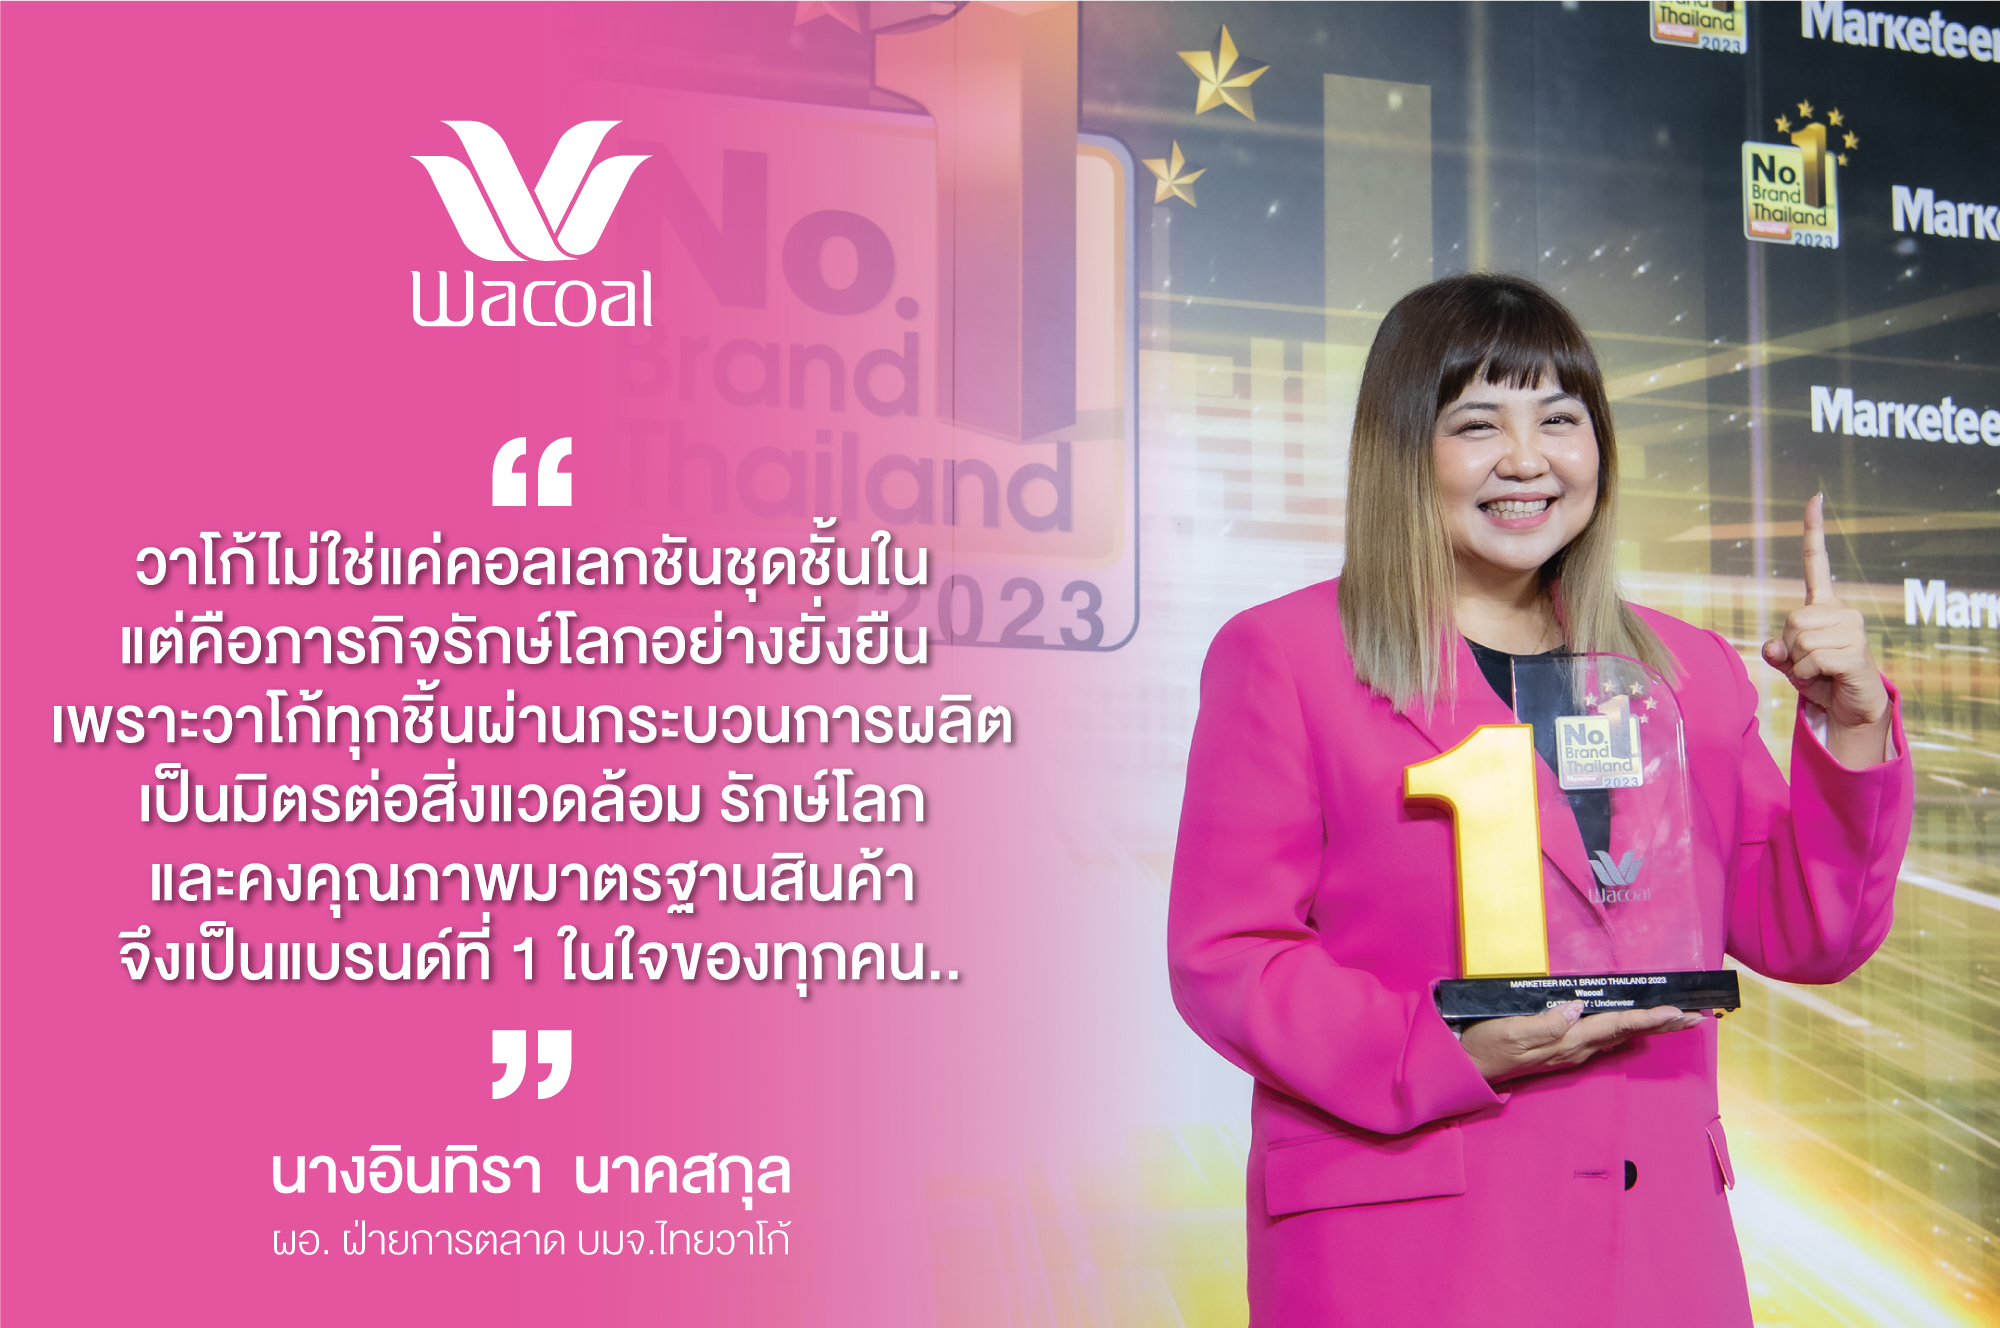 วาโก้ ครองแชมป์ชุดชั้นในอันดับ 1 ถึง 12 ปีซ้อน กับรางวัล Marketeer No.1 Brand Thailand 2023 หมวด Underwear